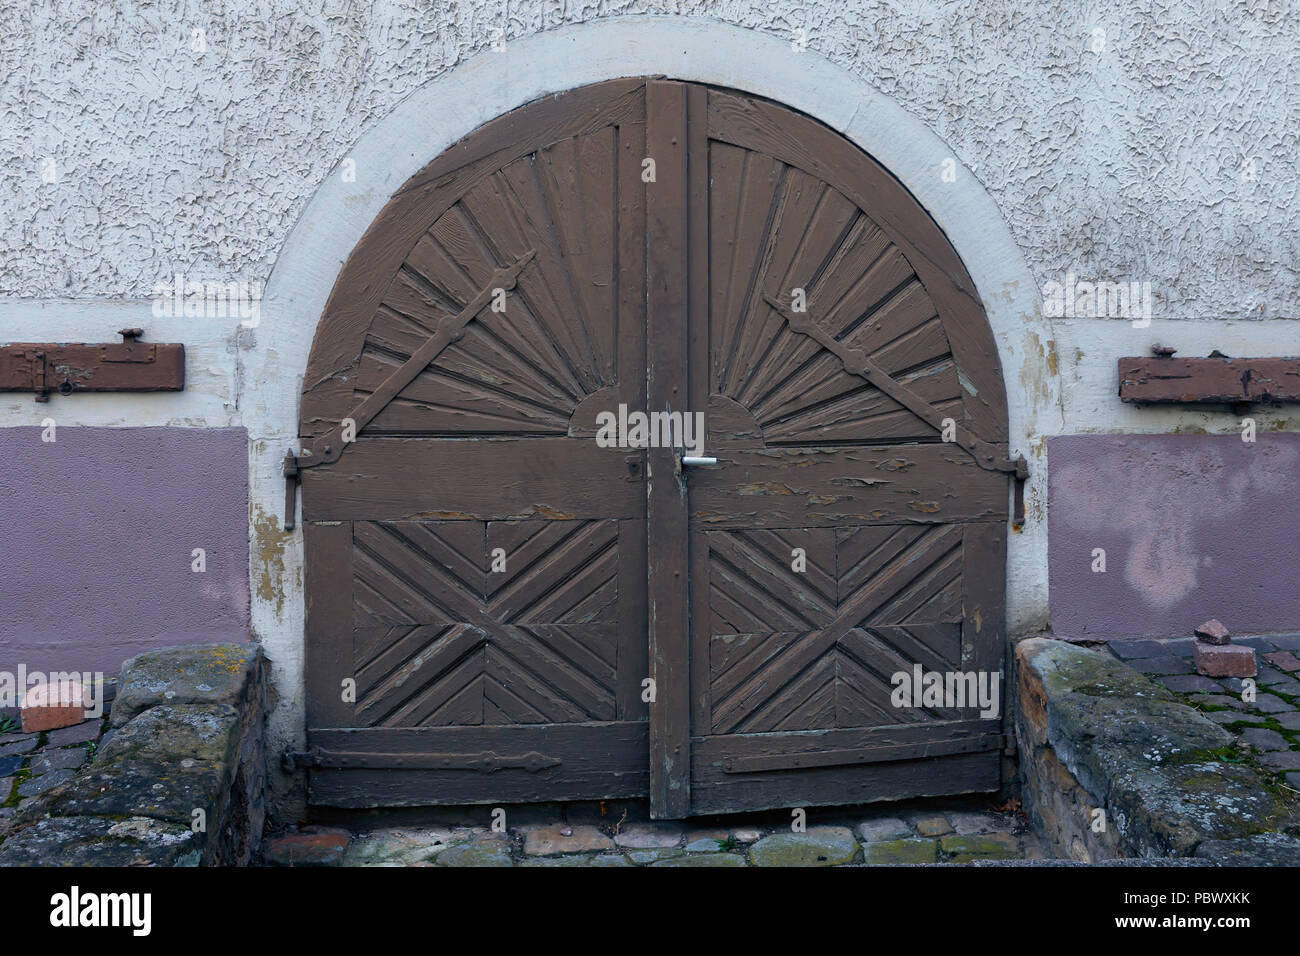 Le vecchie porte in legno e decorate con ornamenti in metallo, sono tipiche per la parte storica di piccole città tedesche. Vecchia porta di legno di close-up Foto Stock